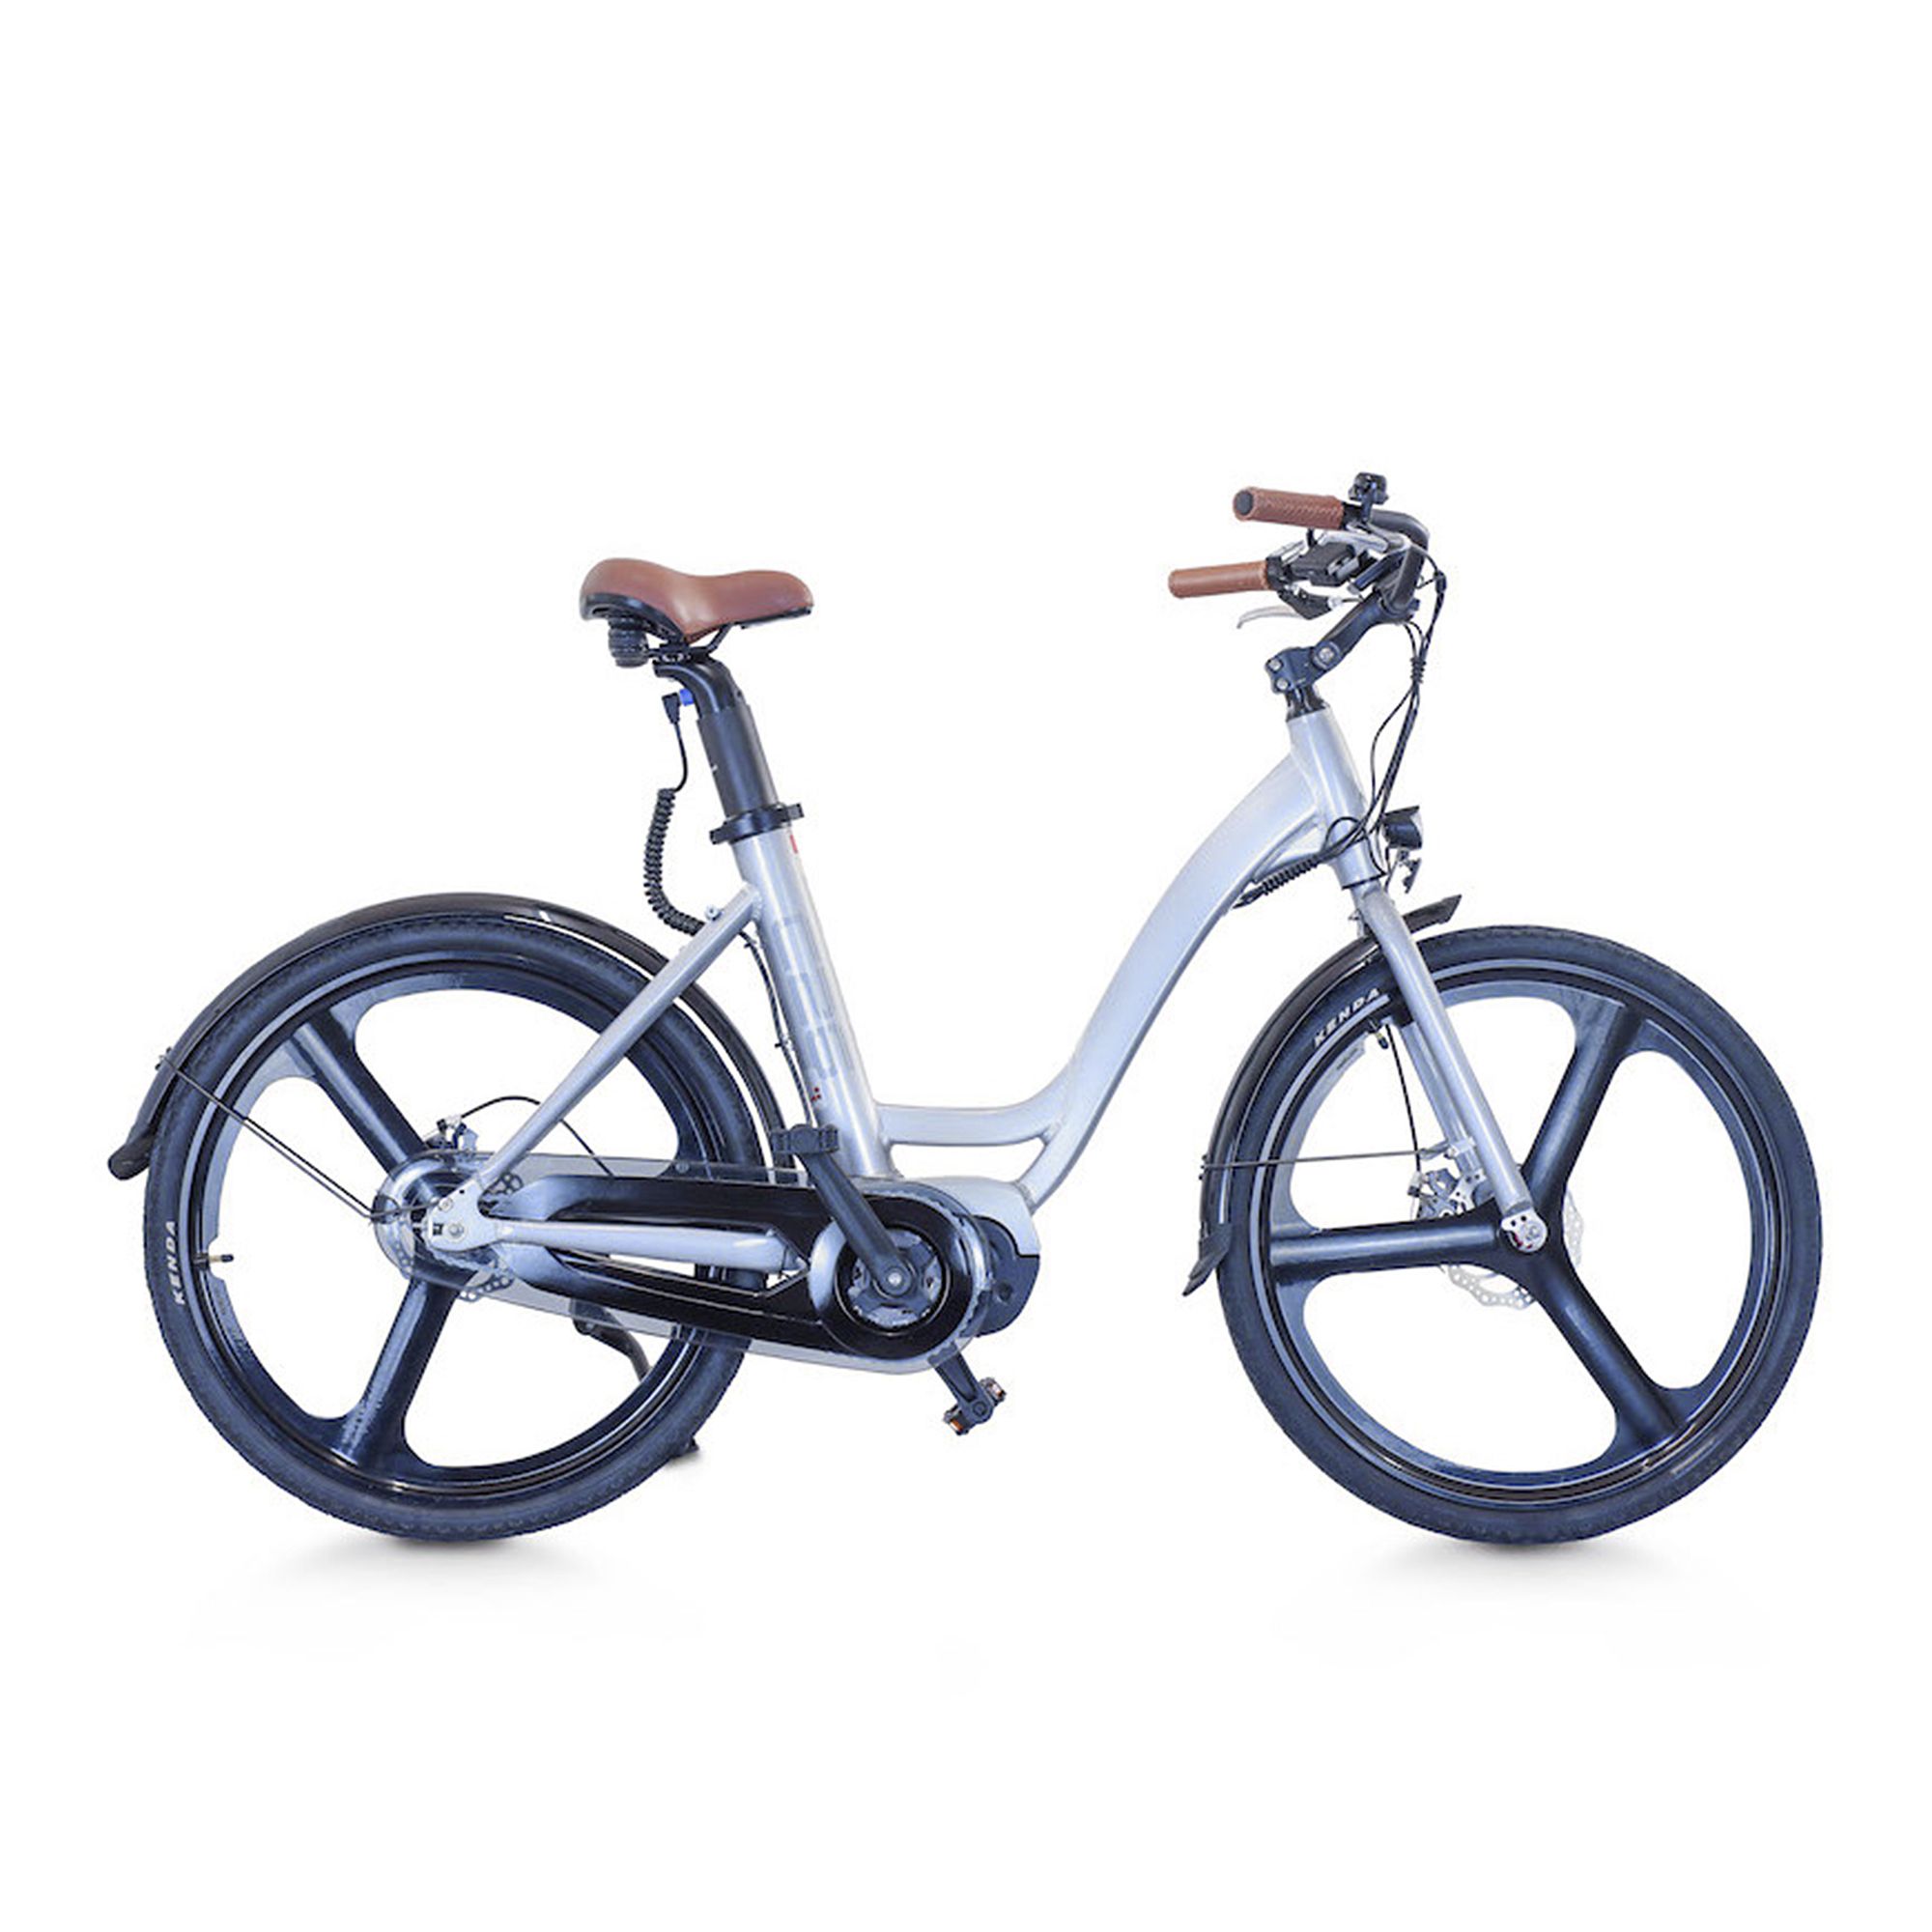 C26 Bici elettrica portata 110kg, autonomia 45km